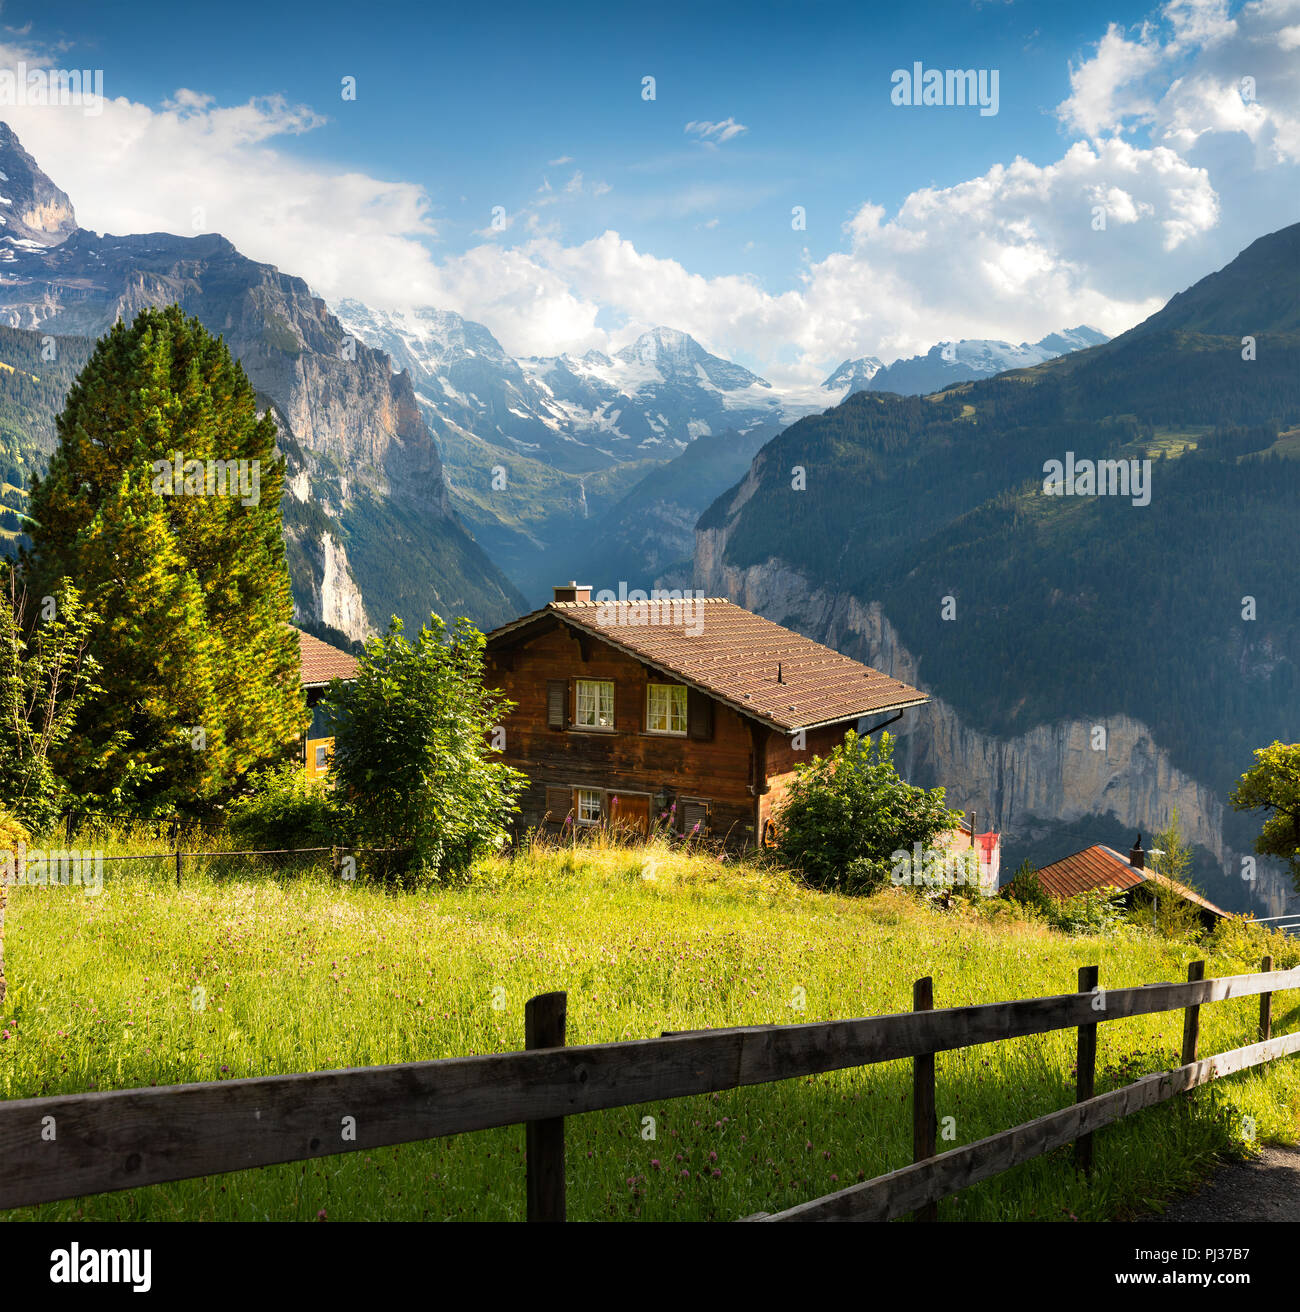 Farbenfrohe Sommer Blick auf Wengen Dorf. Schöne outdoor Szene in den  Schweizer Alpen, Berner Oberland im Kanton Bern, Schweiz, Europa  Stockfotografie - Alamy